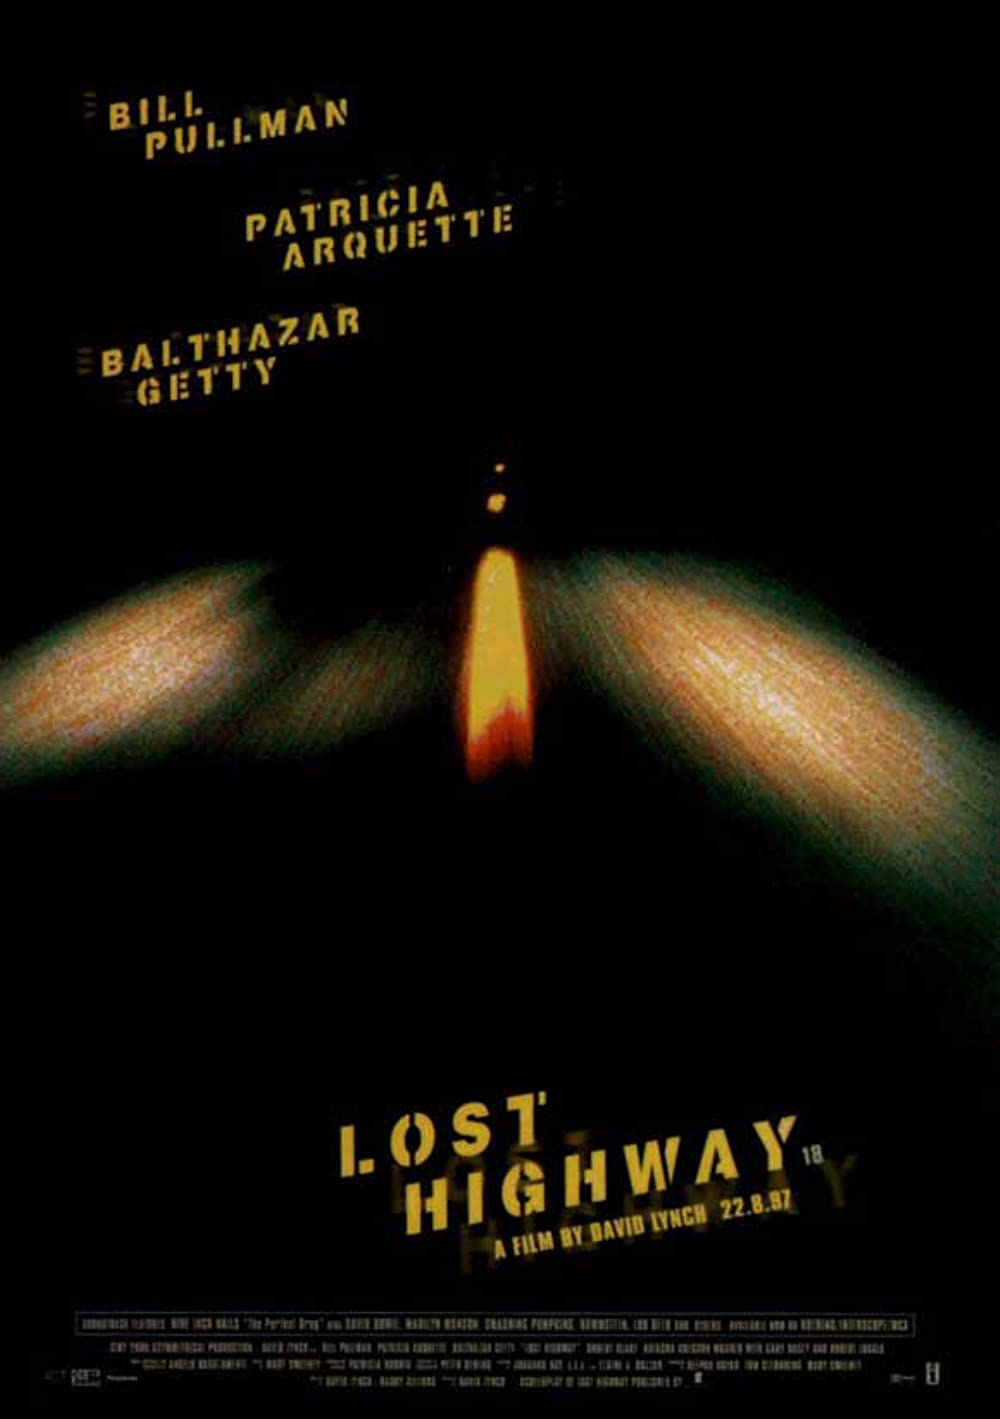 Filmbeschreibung zu Lost Highway